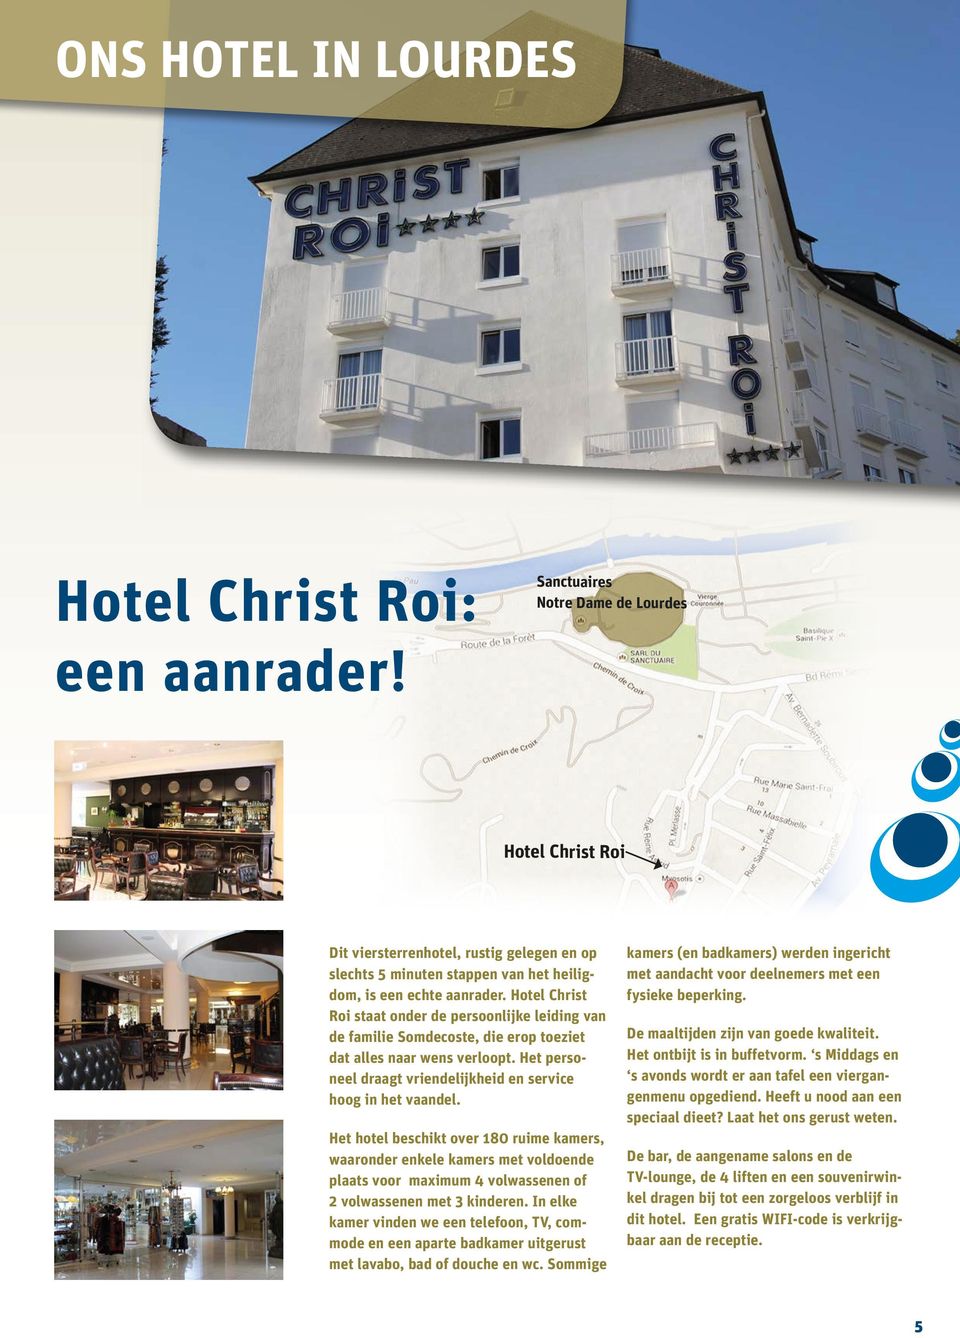 Hotel Christ Roi staat onder de persoonlijke leiding van de familie Somdecoste, die erop toeziet dat alles naar wens verloopt. Het personeel draagt vriendelijkheid en service hoog in het vaandel.